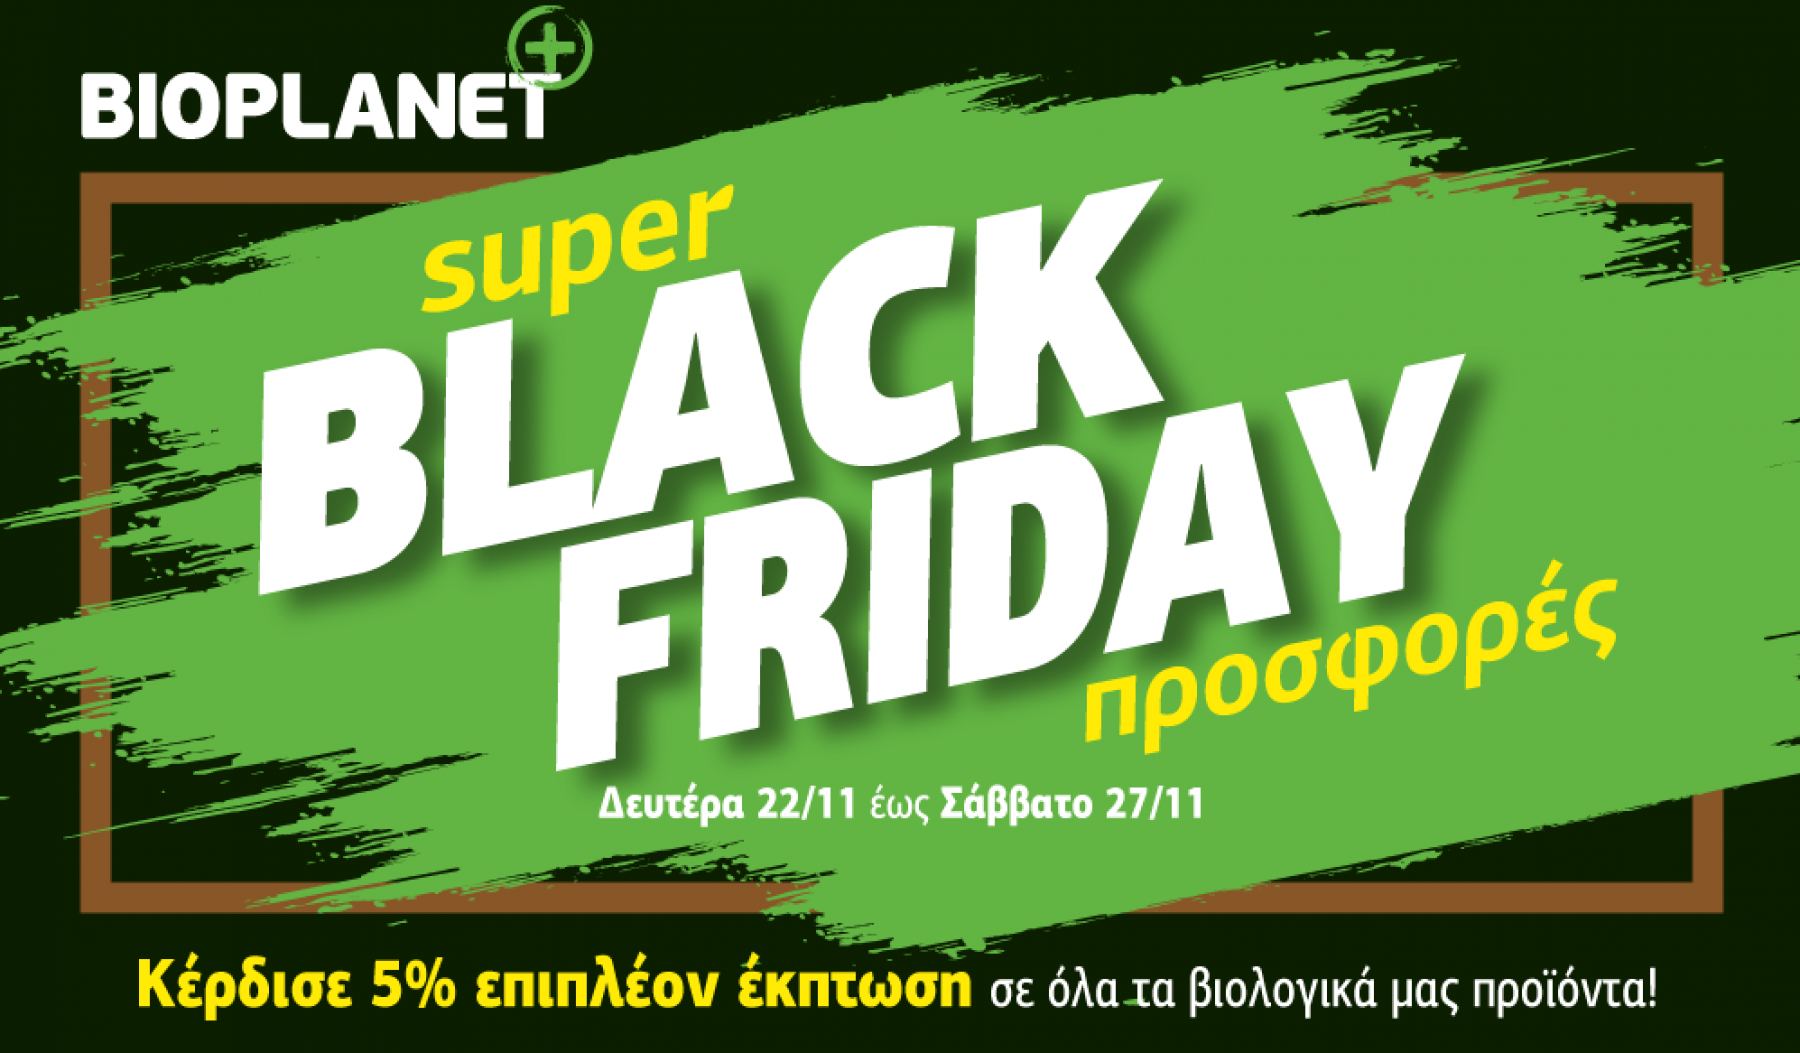 Λαμία: BLACK FRIDAY μέχρι 27/11 στο κατάστημα βιολογικών προϊόντων Bioplanet!